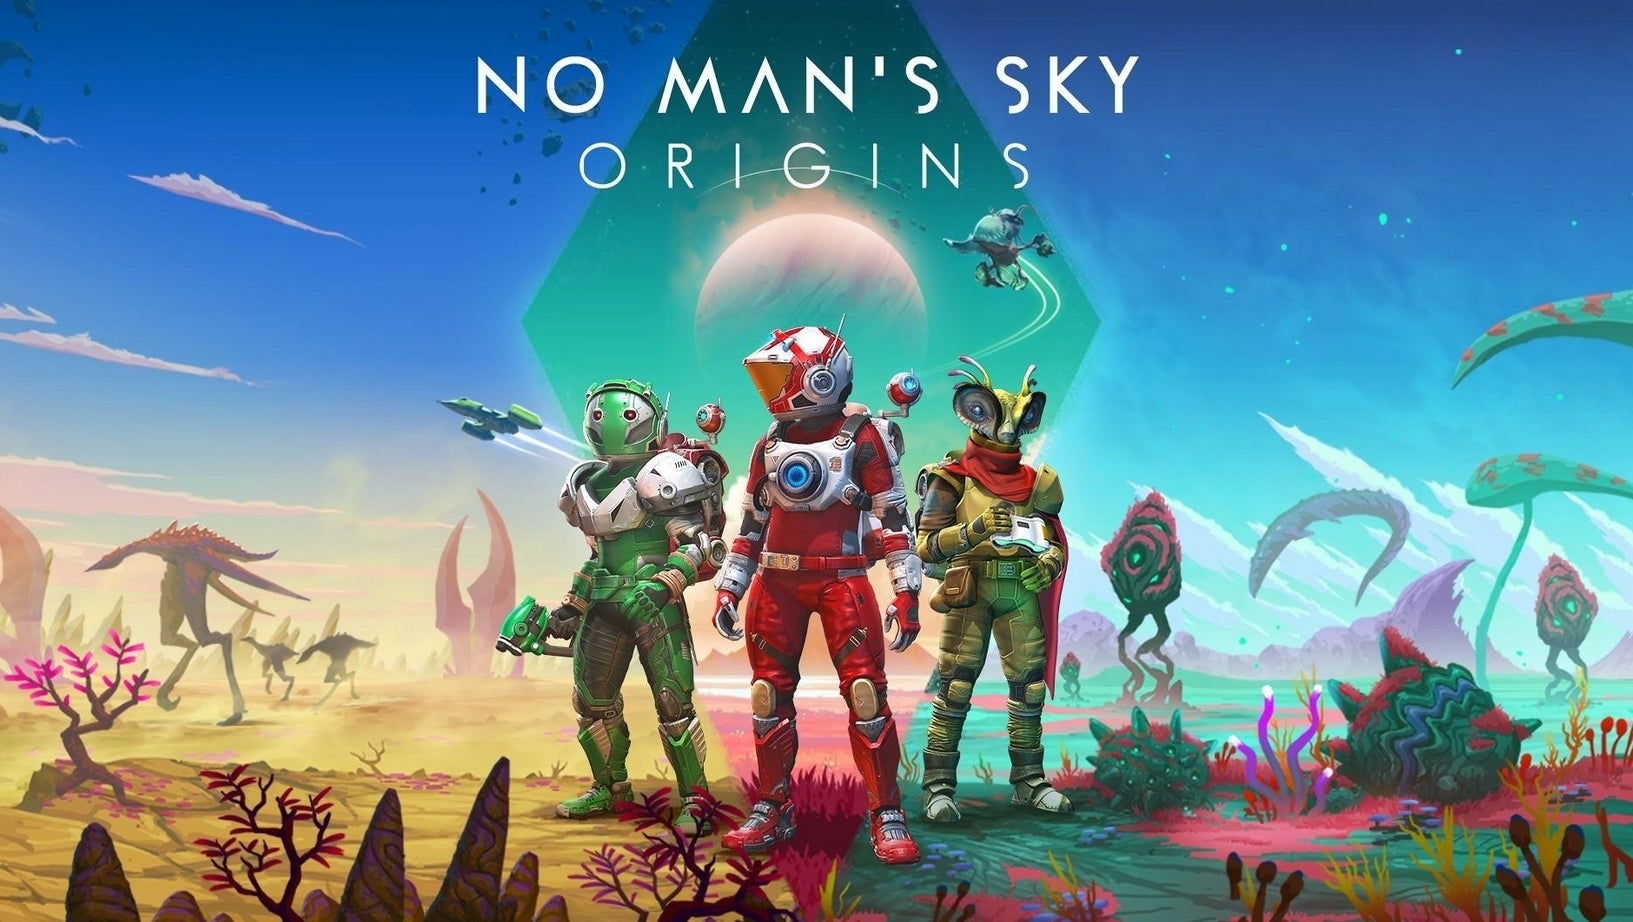 Imagen para No Man's Sky: Origins añade millones de planetas nuevos al universo del juego